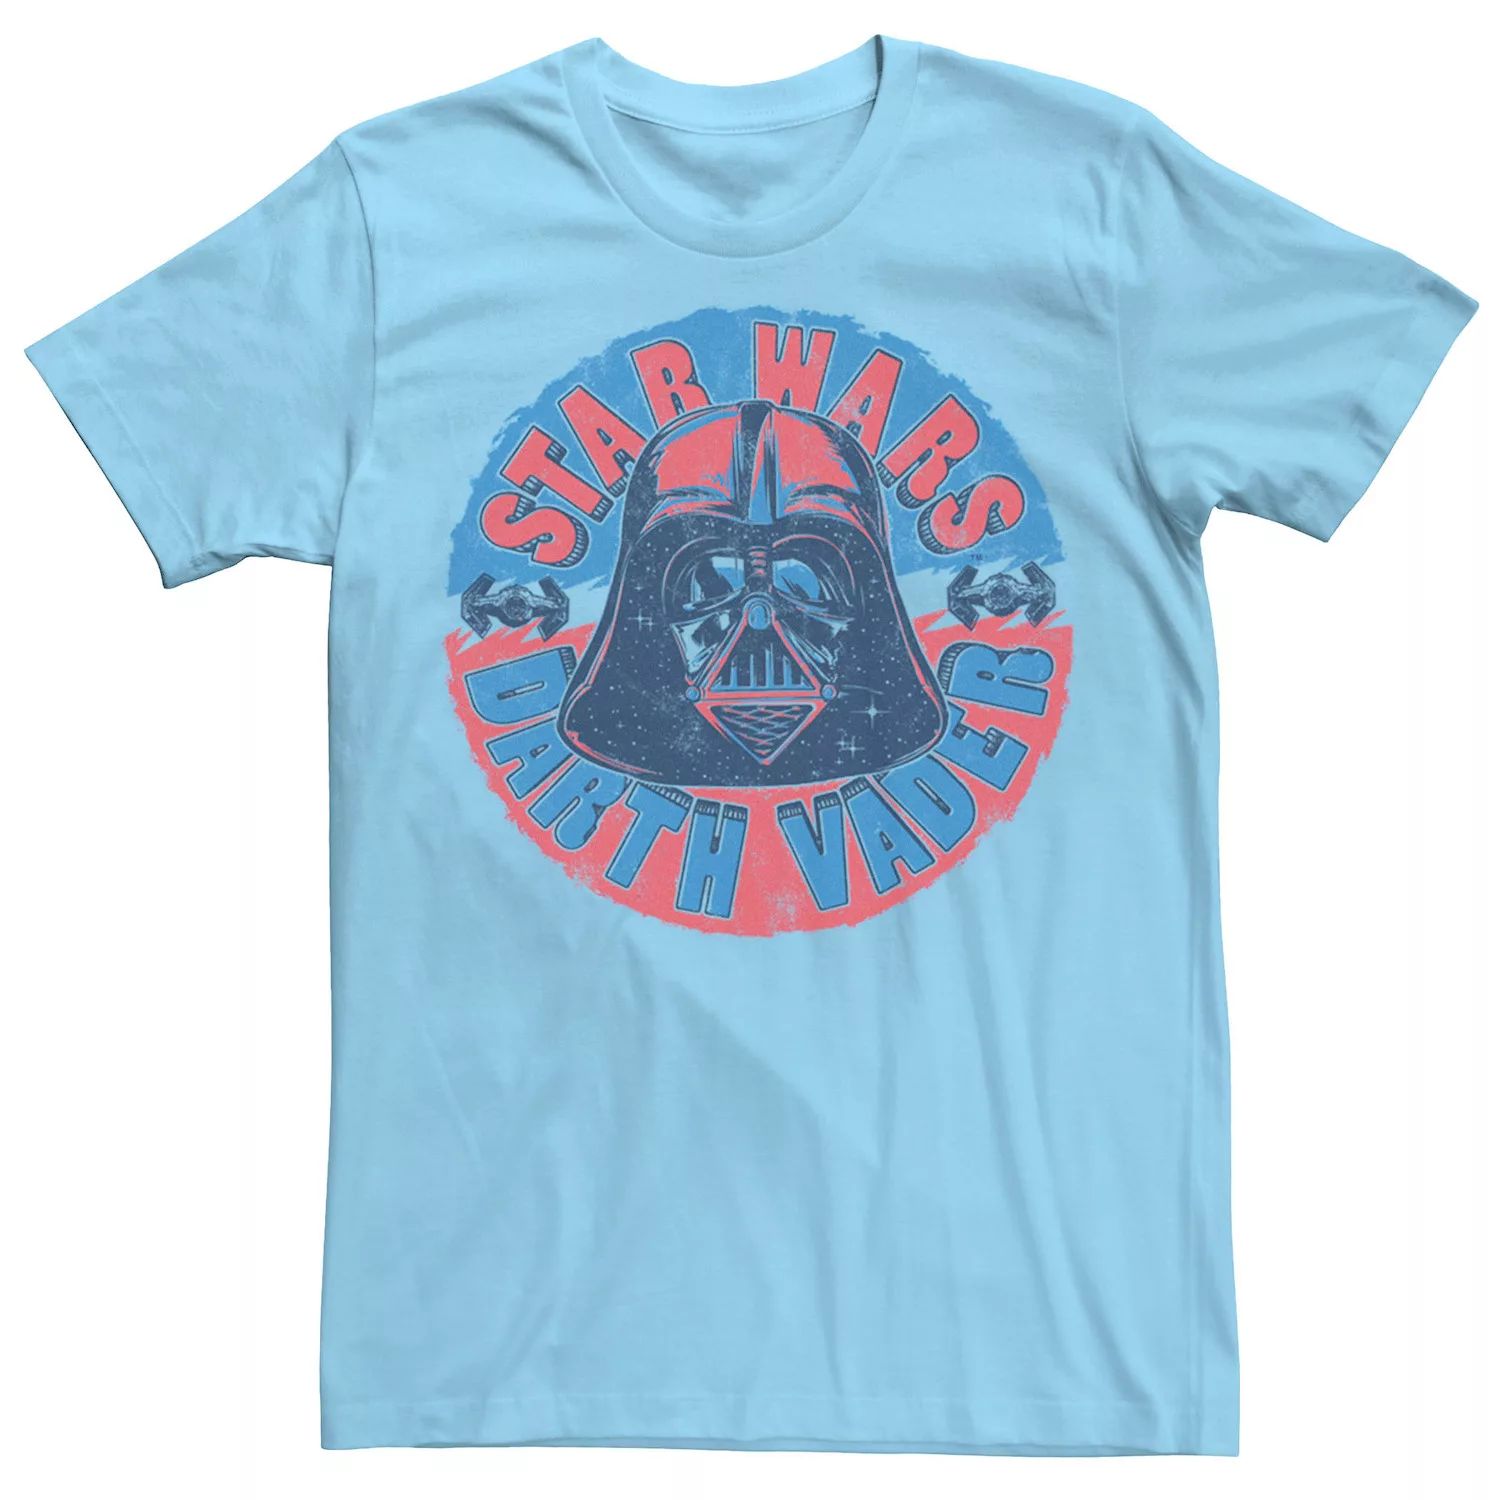 Мужская футболка с портретом и надписью «Звездные войны Дарт Вейдер» Star Wars, светло-синий мужская футболка с портретом и надписью звездные войны дарт вейдер star wars светло синий